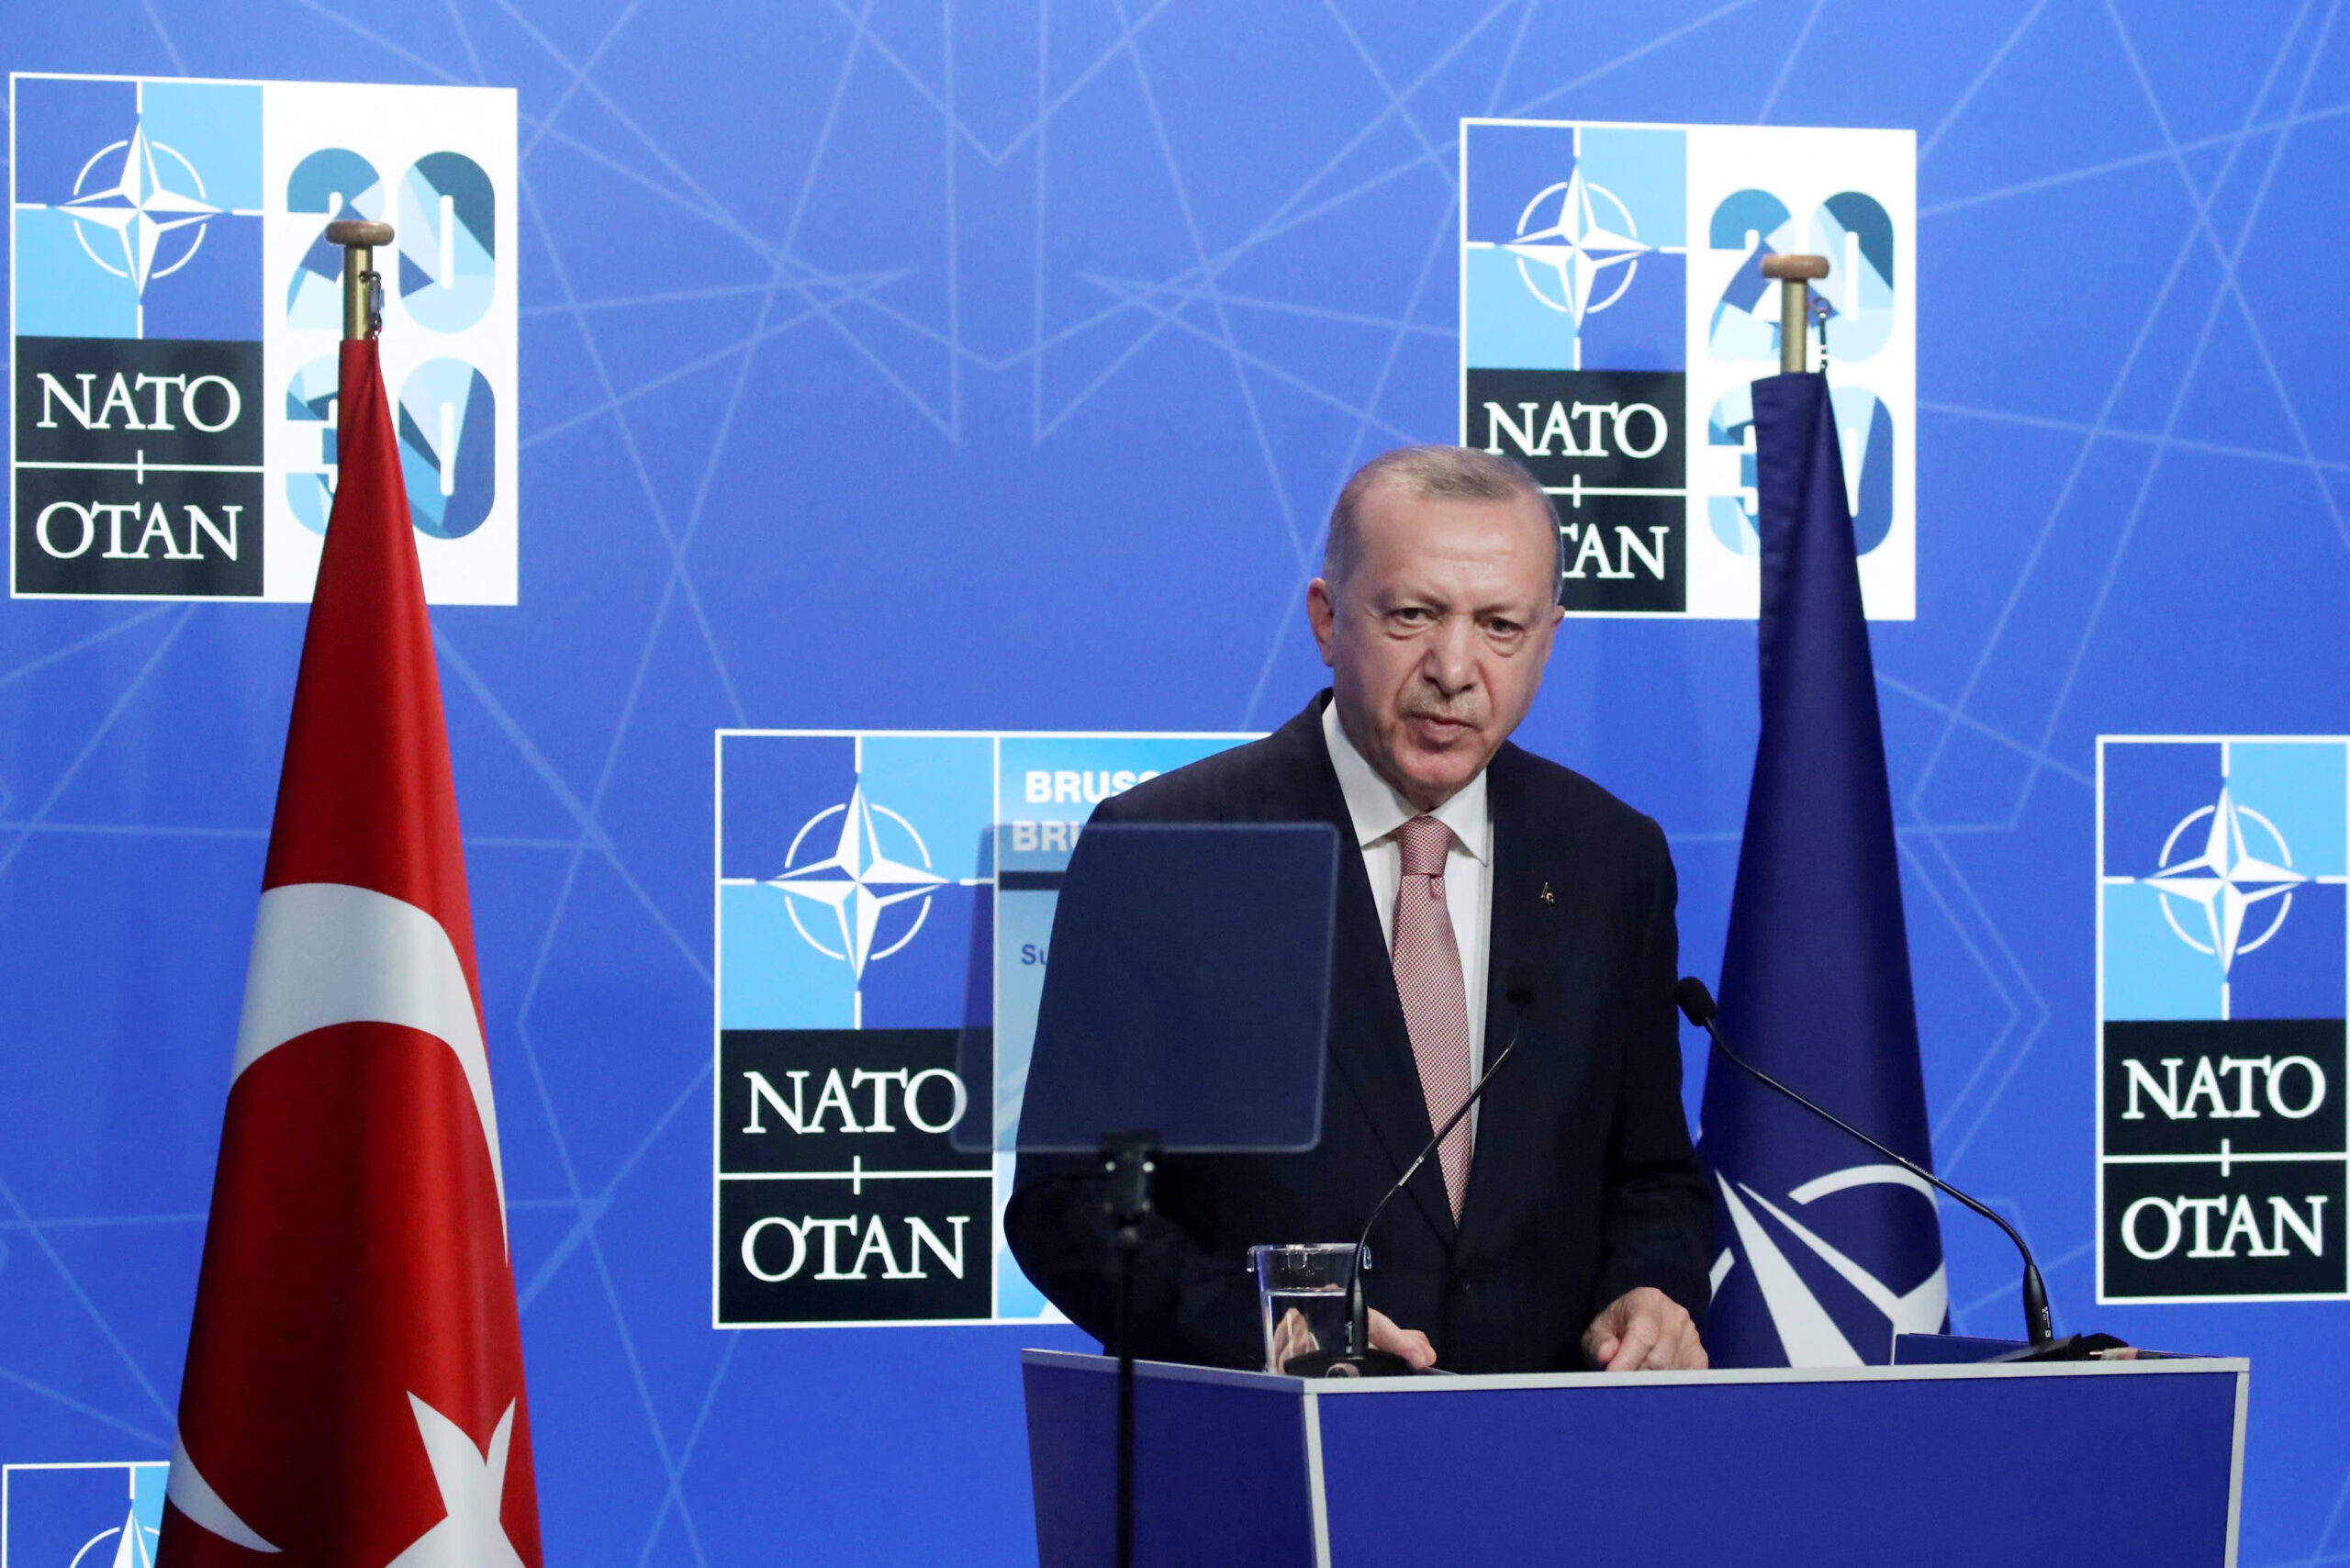 Türkiye set to surpass France in NATO defense spending